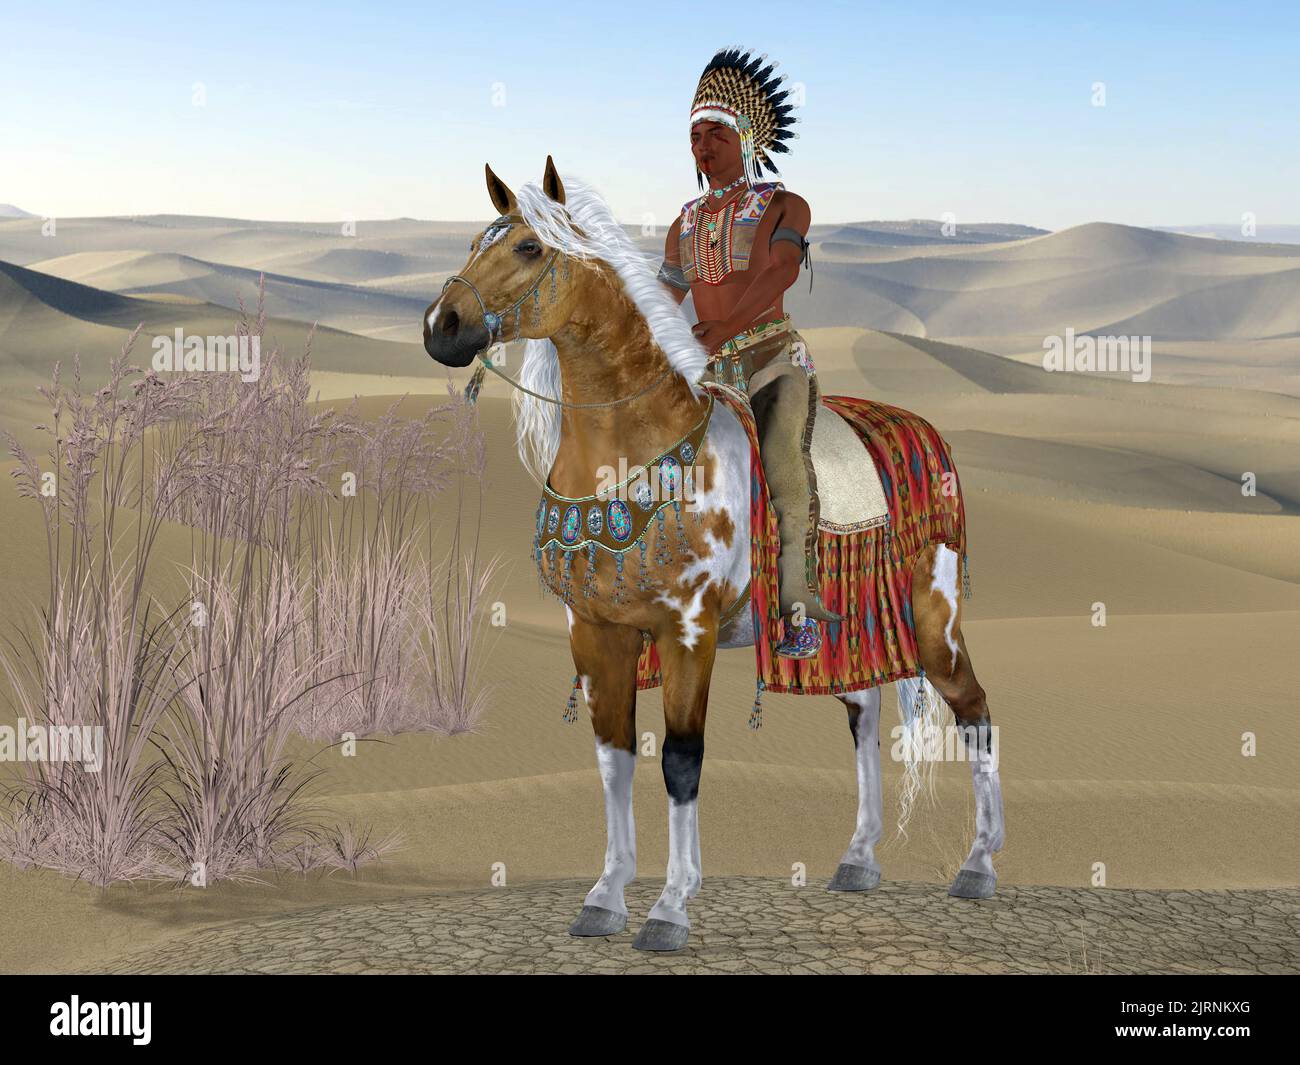 Indian Soaring Eagle - Un indio americano monta su caballo de pintura en un paisaje desértico con pintura de guerra en su cara. Foto de stock